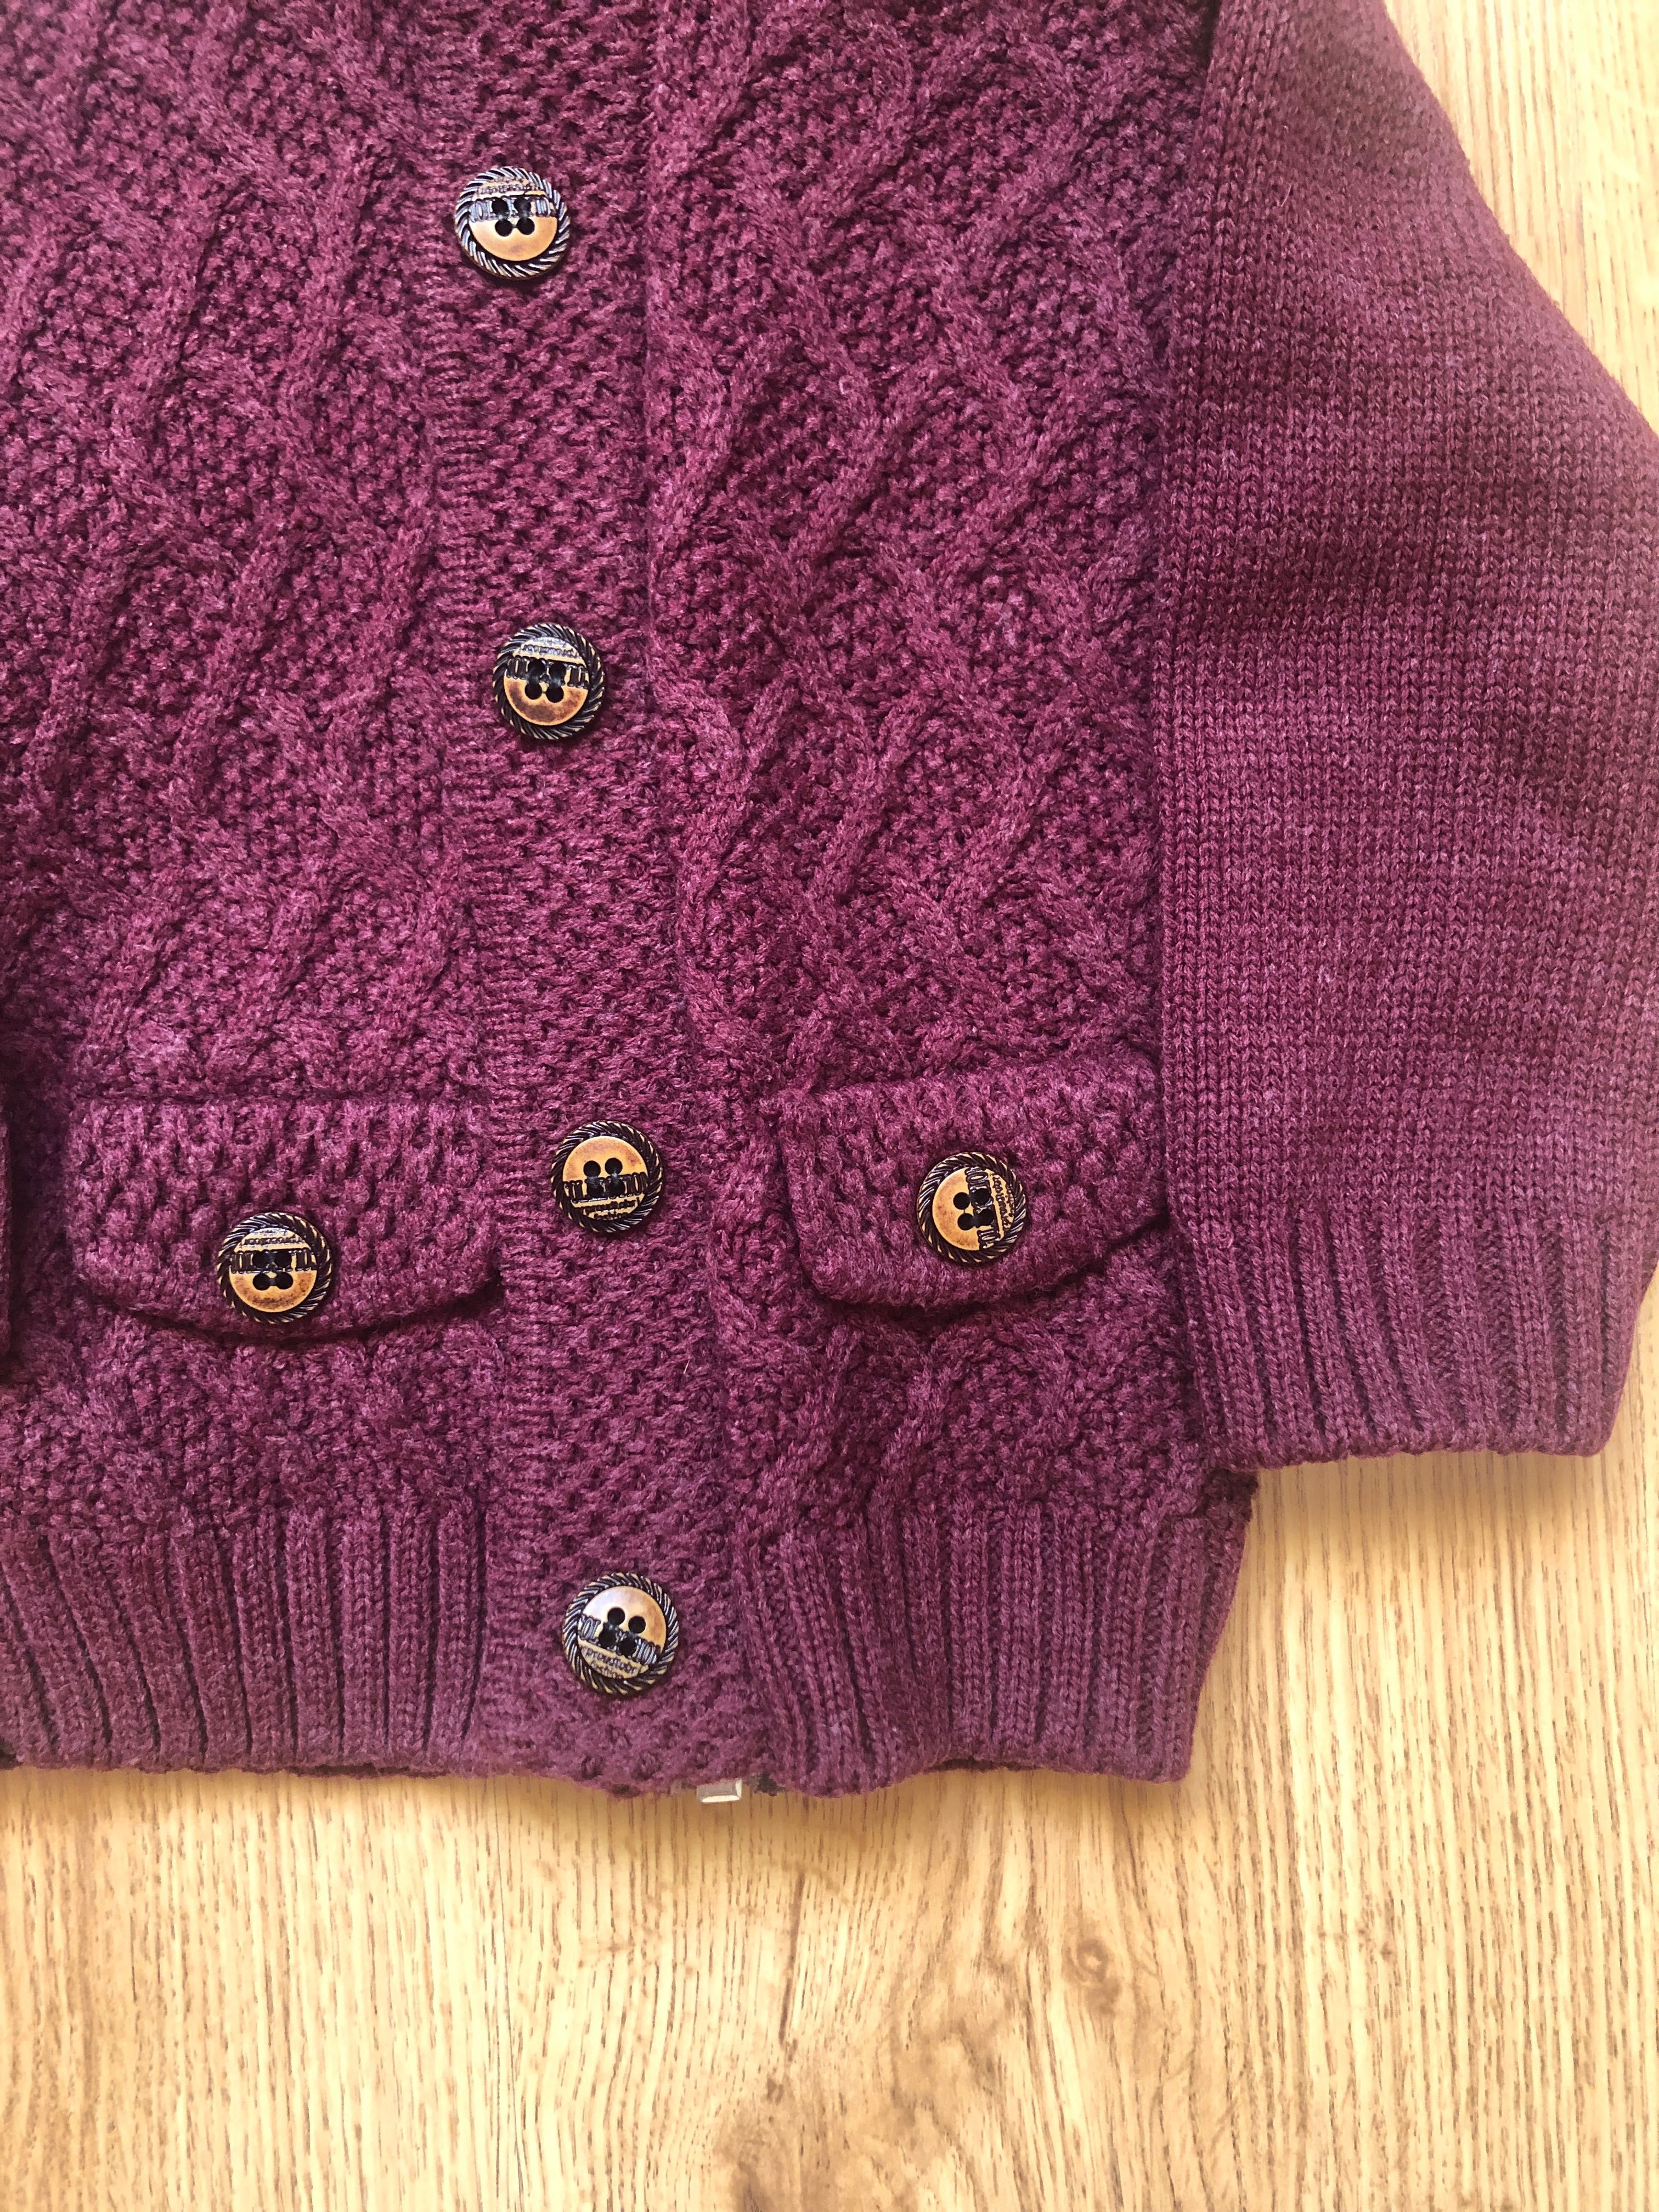 Sweter bordowy niemowlęcy dla chłopca lub dziewczynki, rozmiar 80